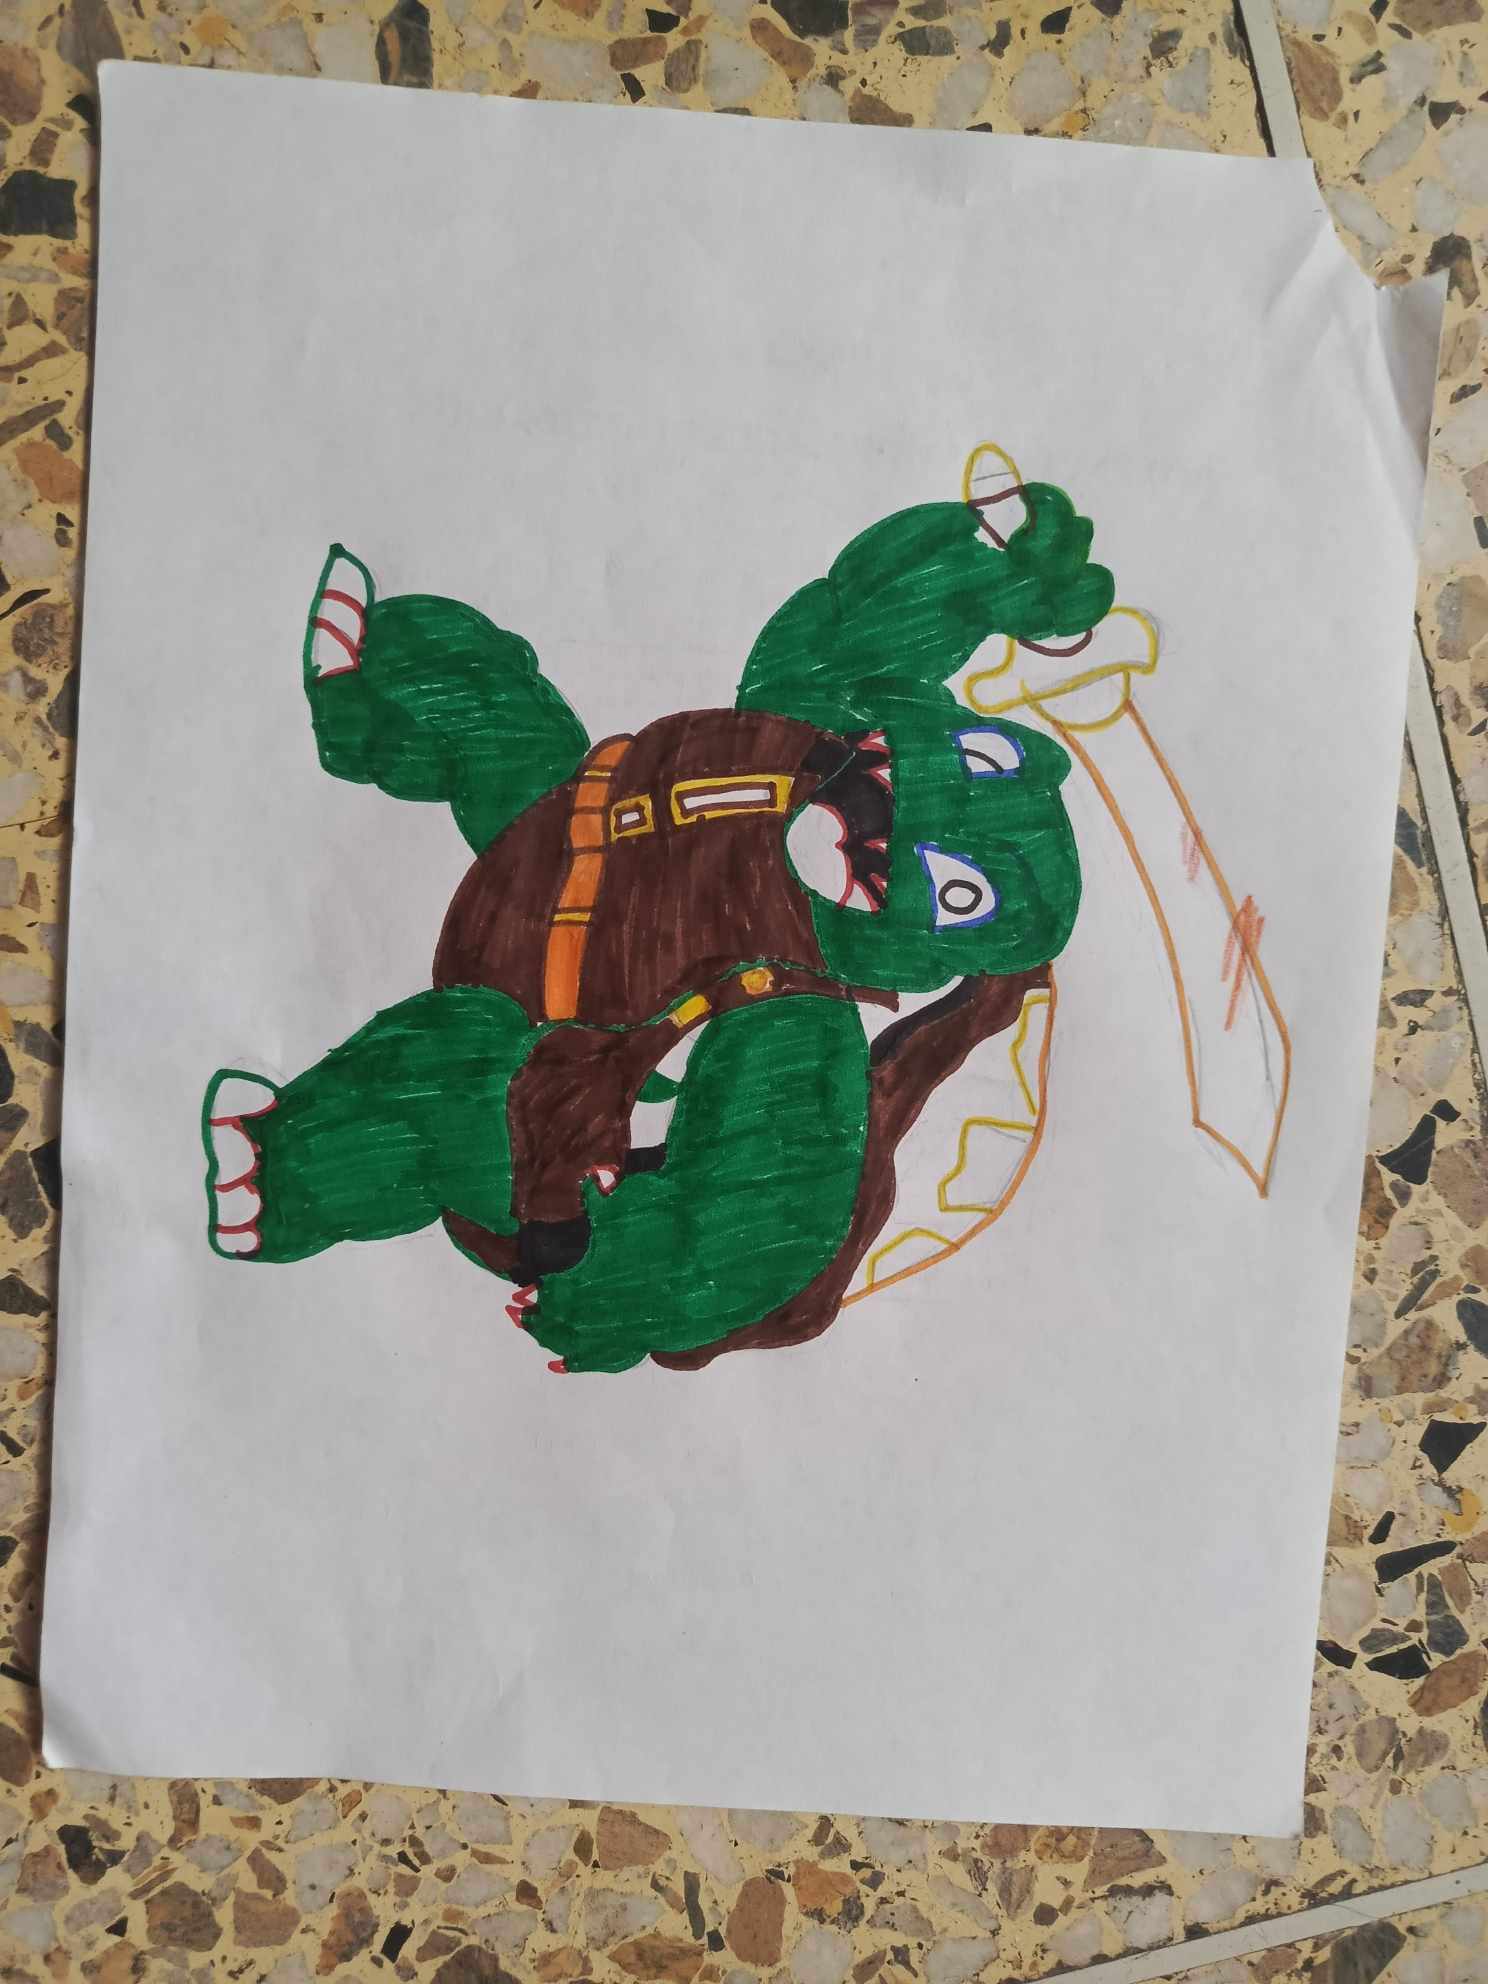 turtle4.jpg